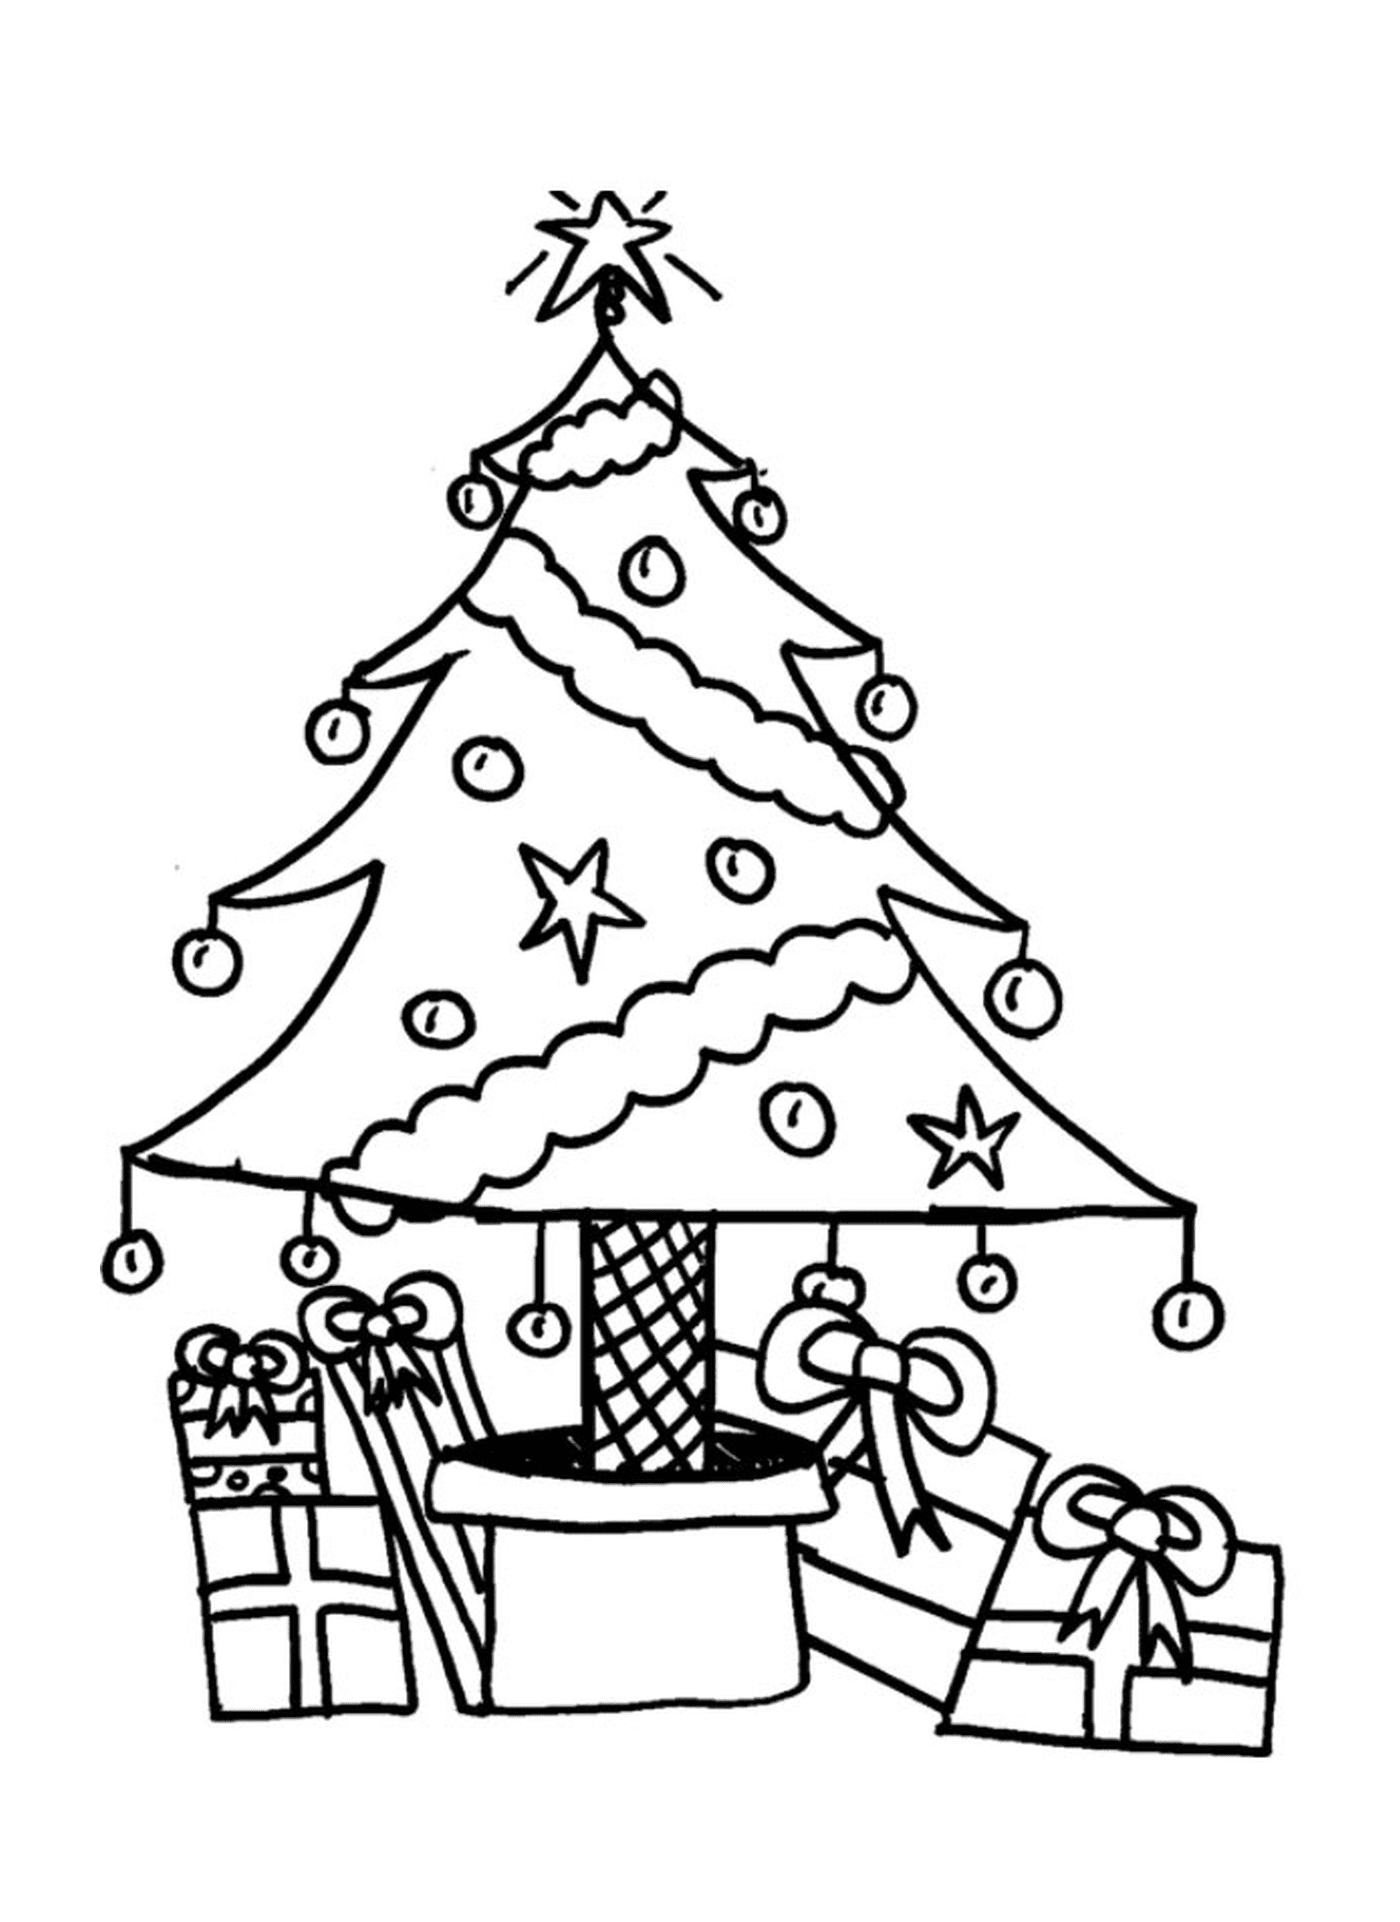  Un árbol de Navidad con regalos debajo 